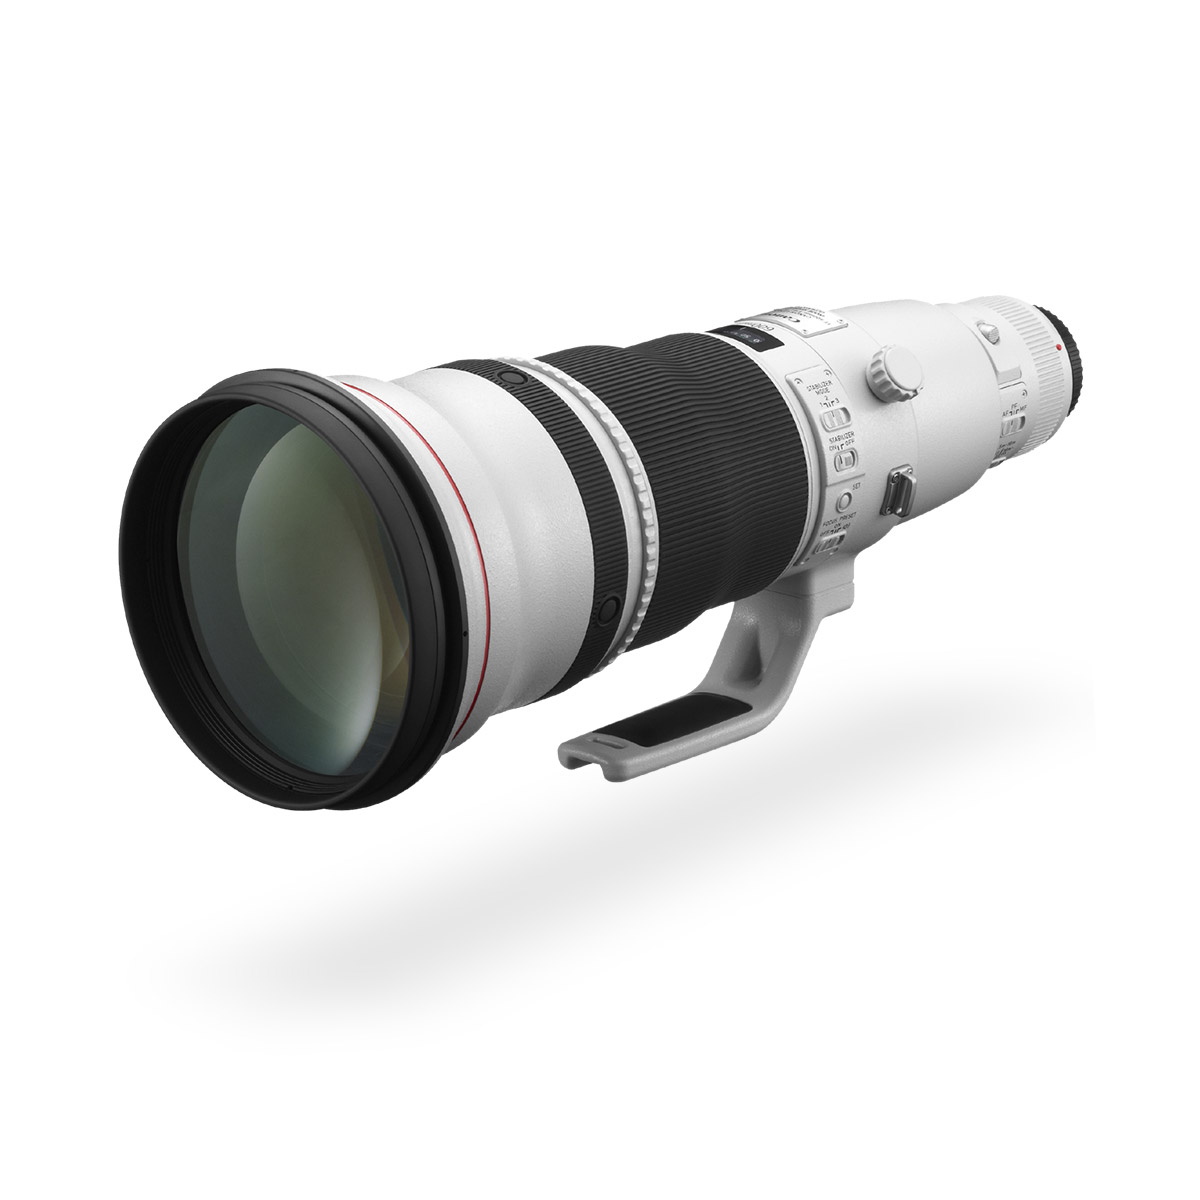 EF 600mm f/4L IS II USM lens